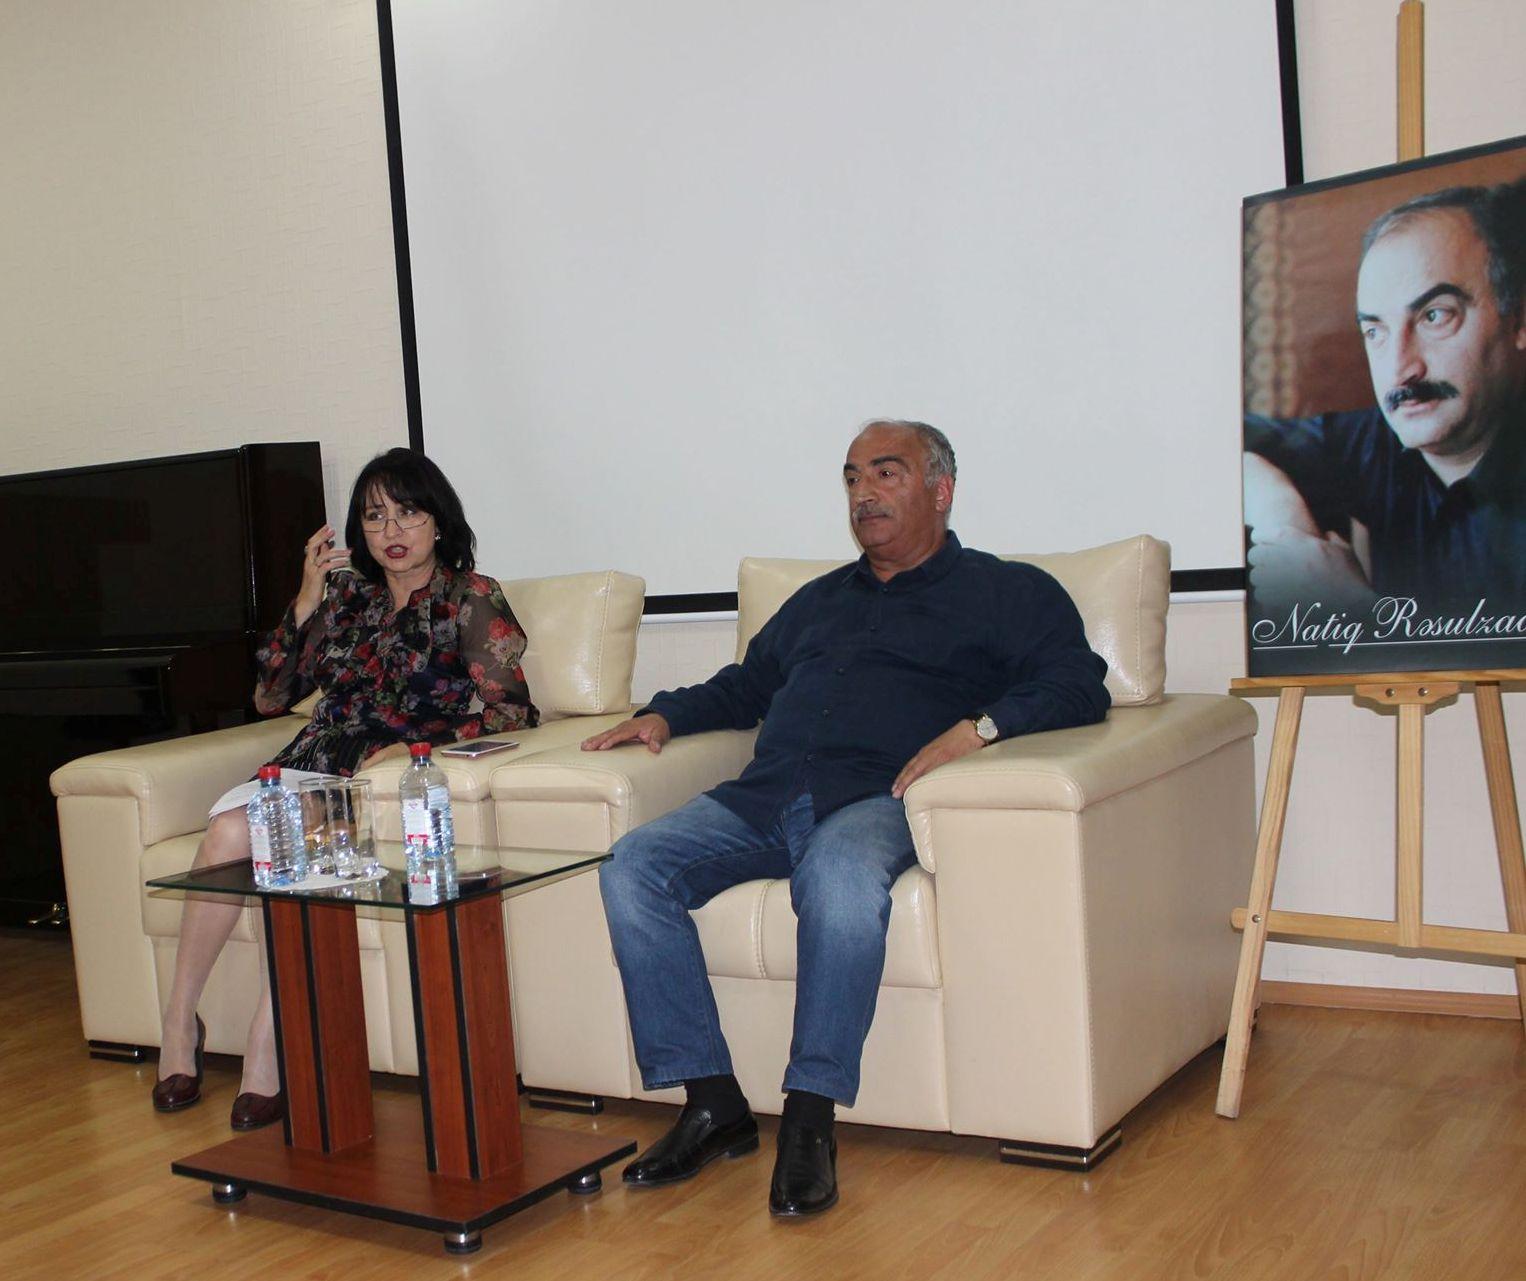 Я люблю пошутить… - в Баку прошла встреча с известным писателем (ФОТО)